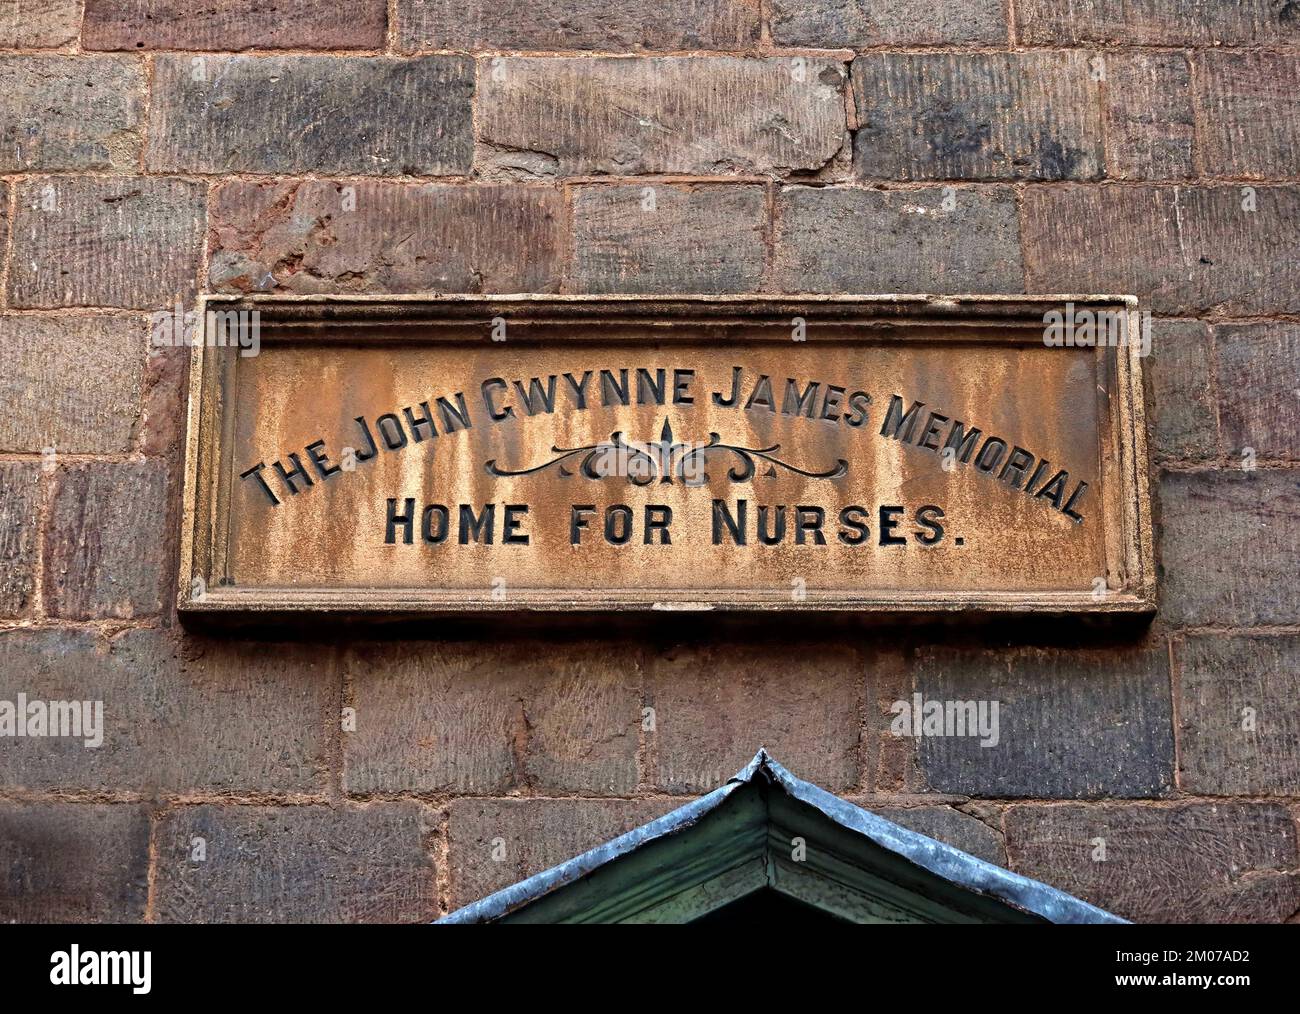 Le John Gwynne James, maison commémorative, pour les infirmières, 33, rue Bridge, Hereford, Herefordshire, Angleterre, Royaume-Uni, HR4 9DG Banque D'Images